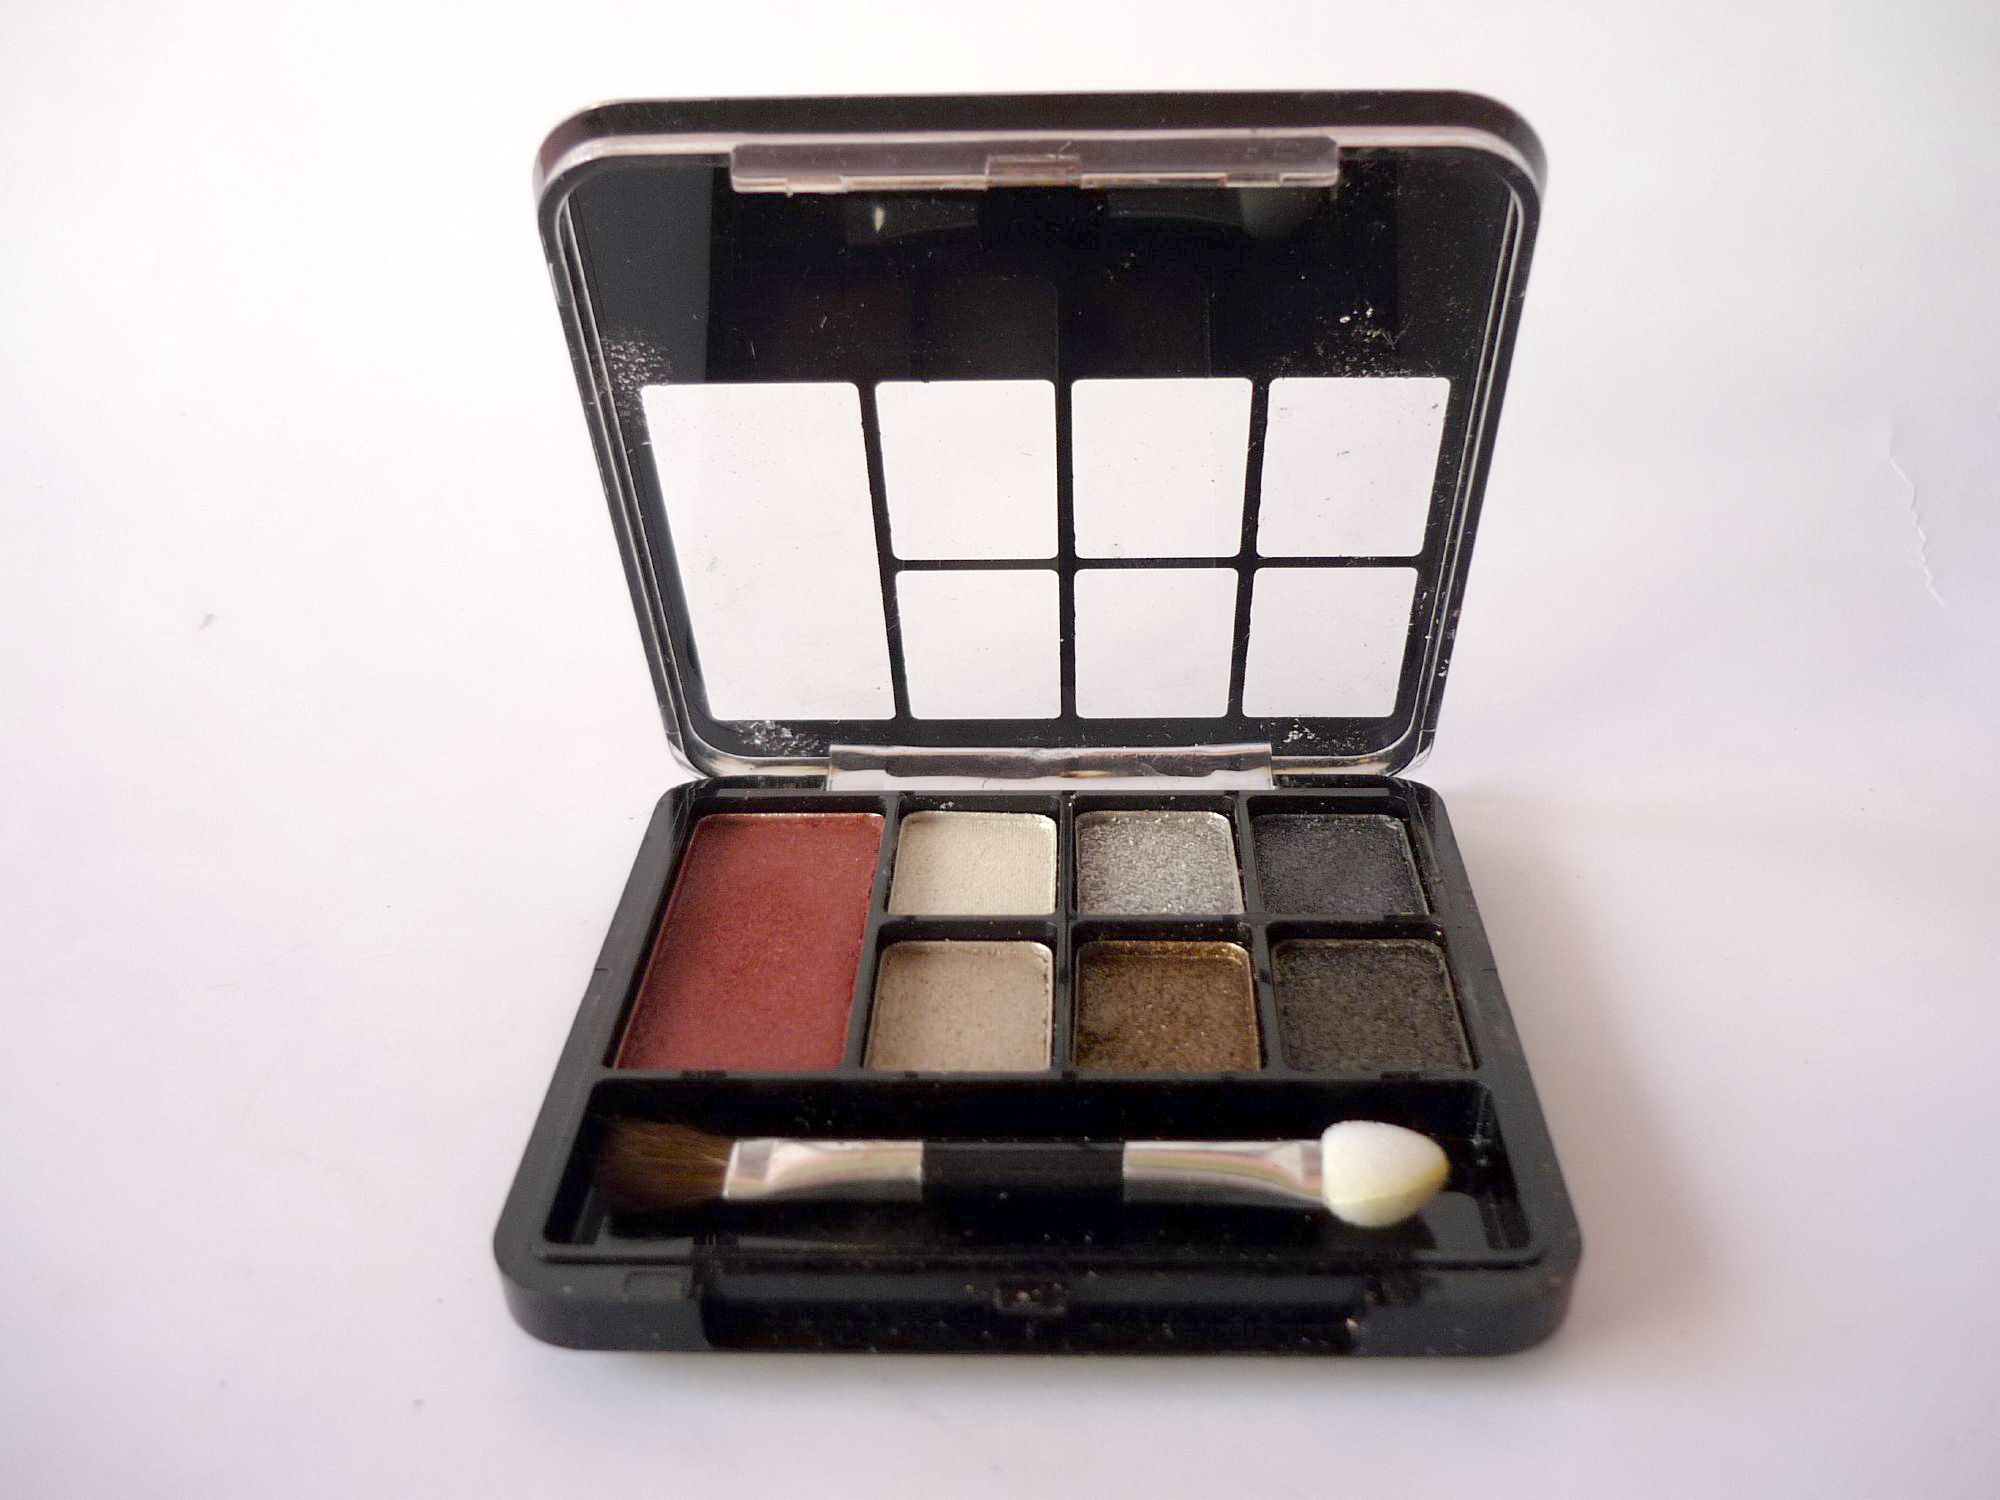 Makeup kit photo